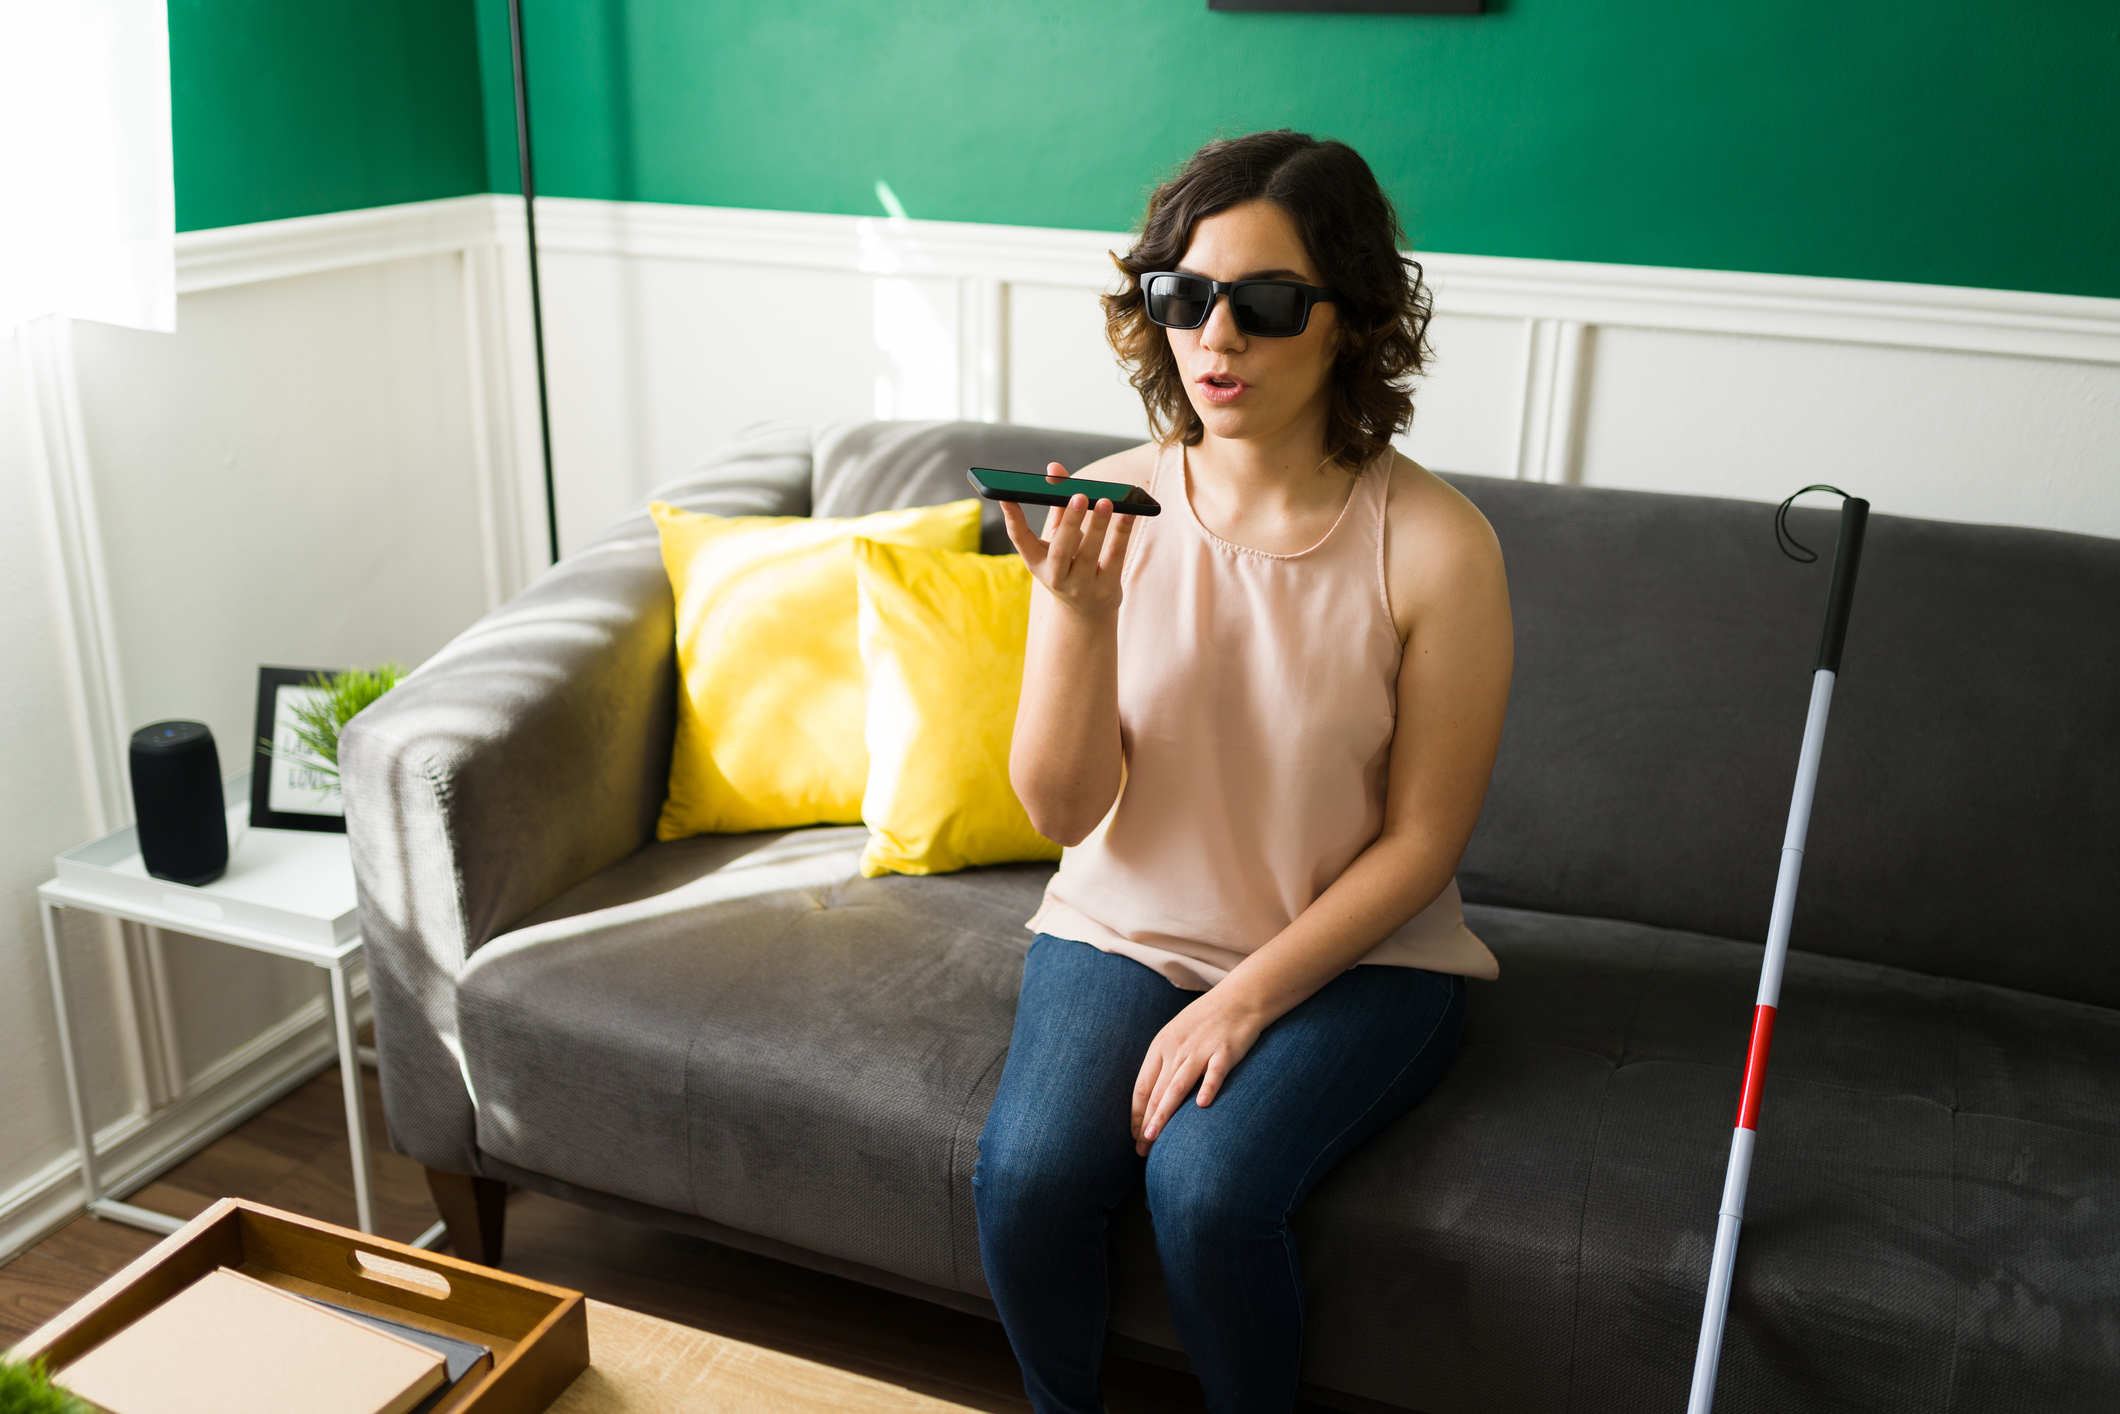 Foto de uma mulher cega sentada no sofá de uma sala com um celular na mão direta, próximo a sua boca. Ao seu lado está uma bengala.